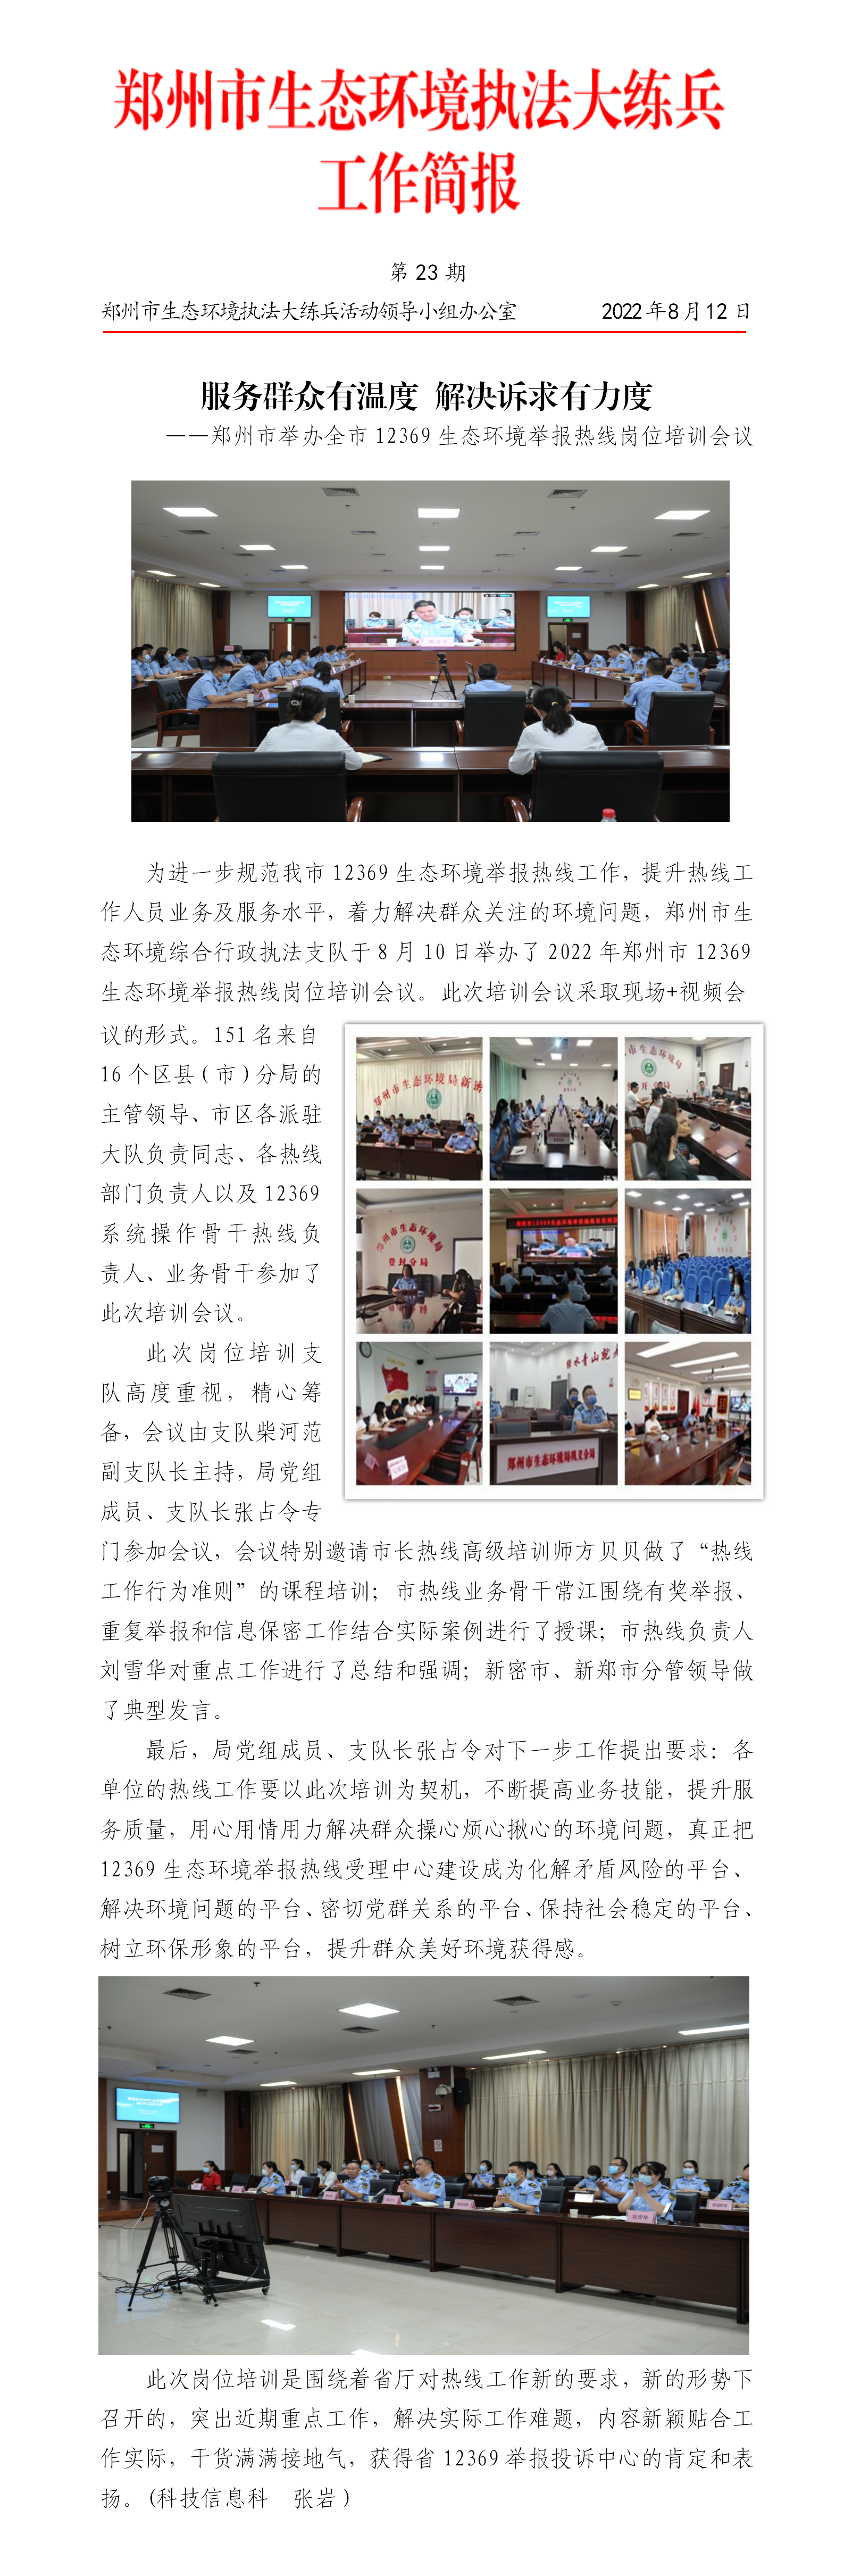 第23期 郑州市举办12369生态环境举报热线岗位培训 - 副本 (2)_01.png